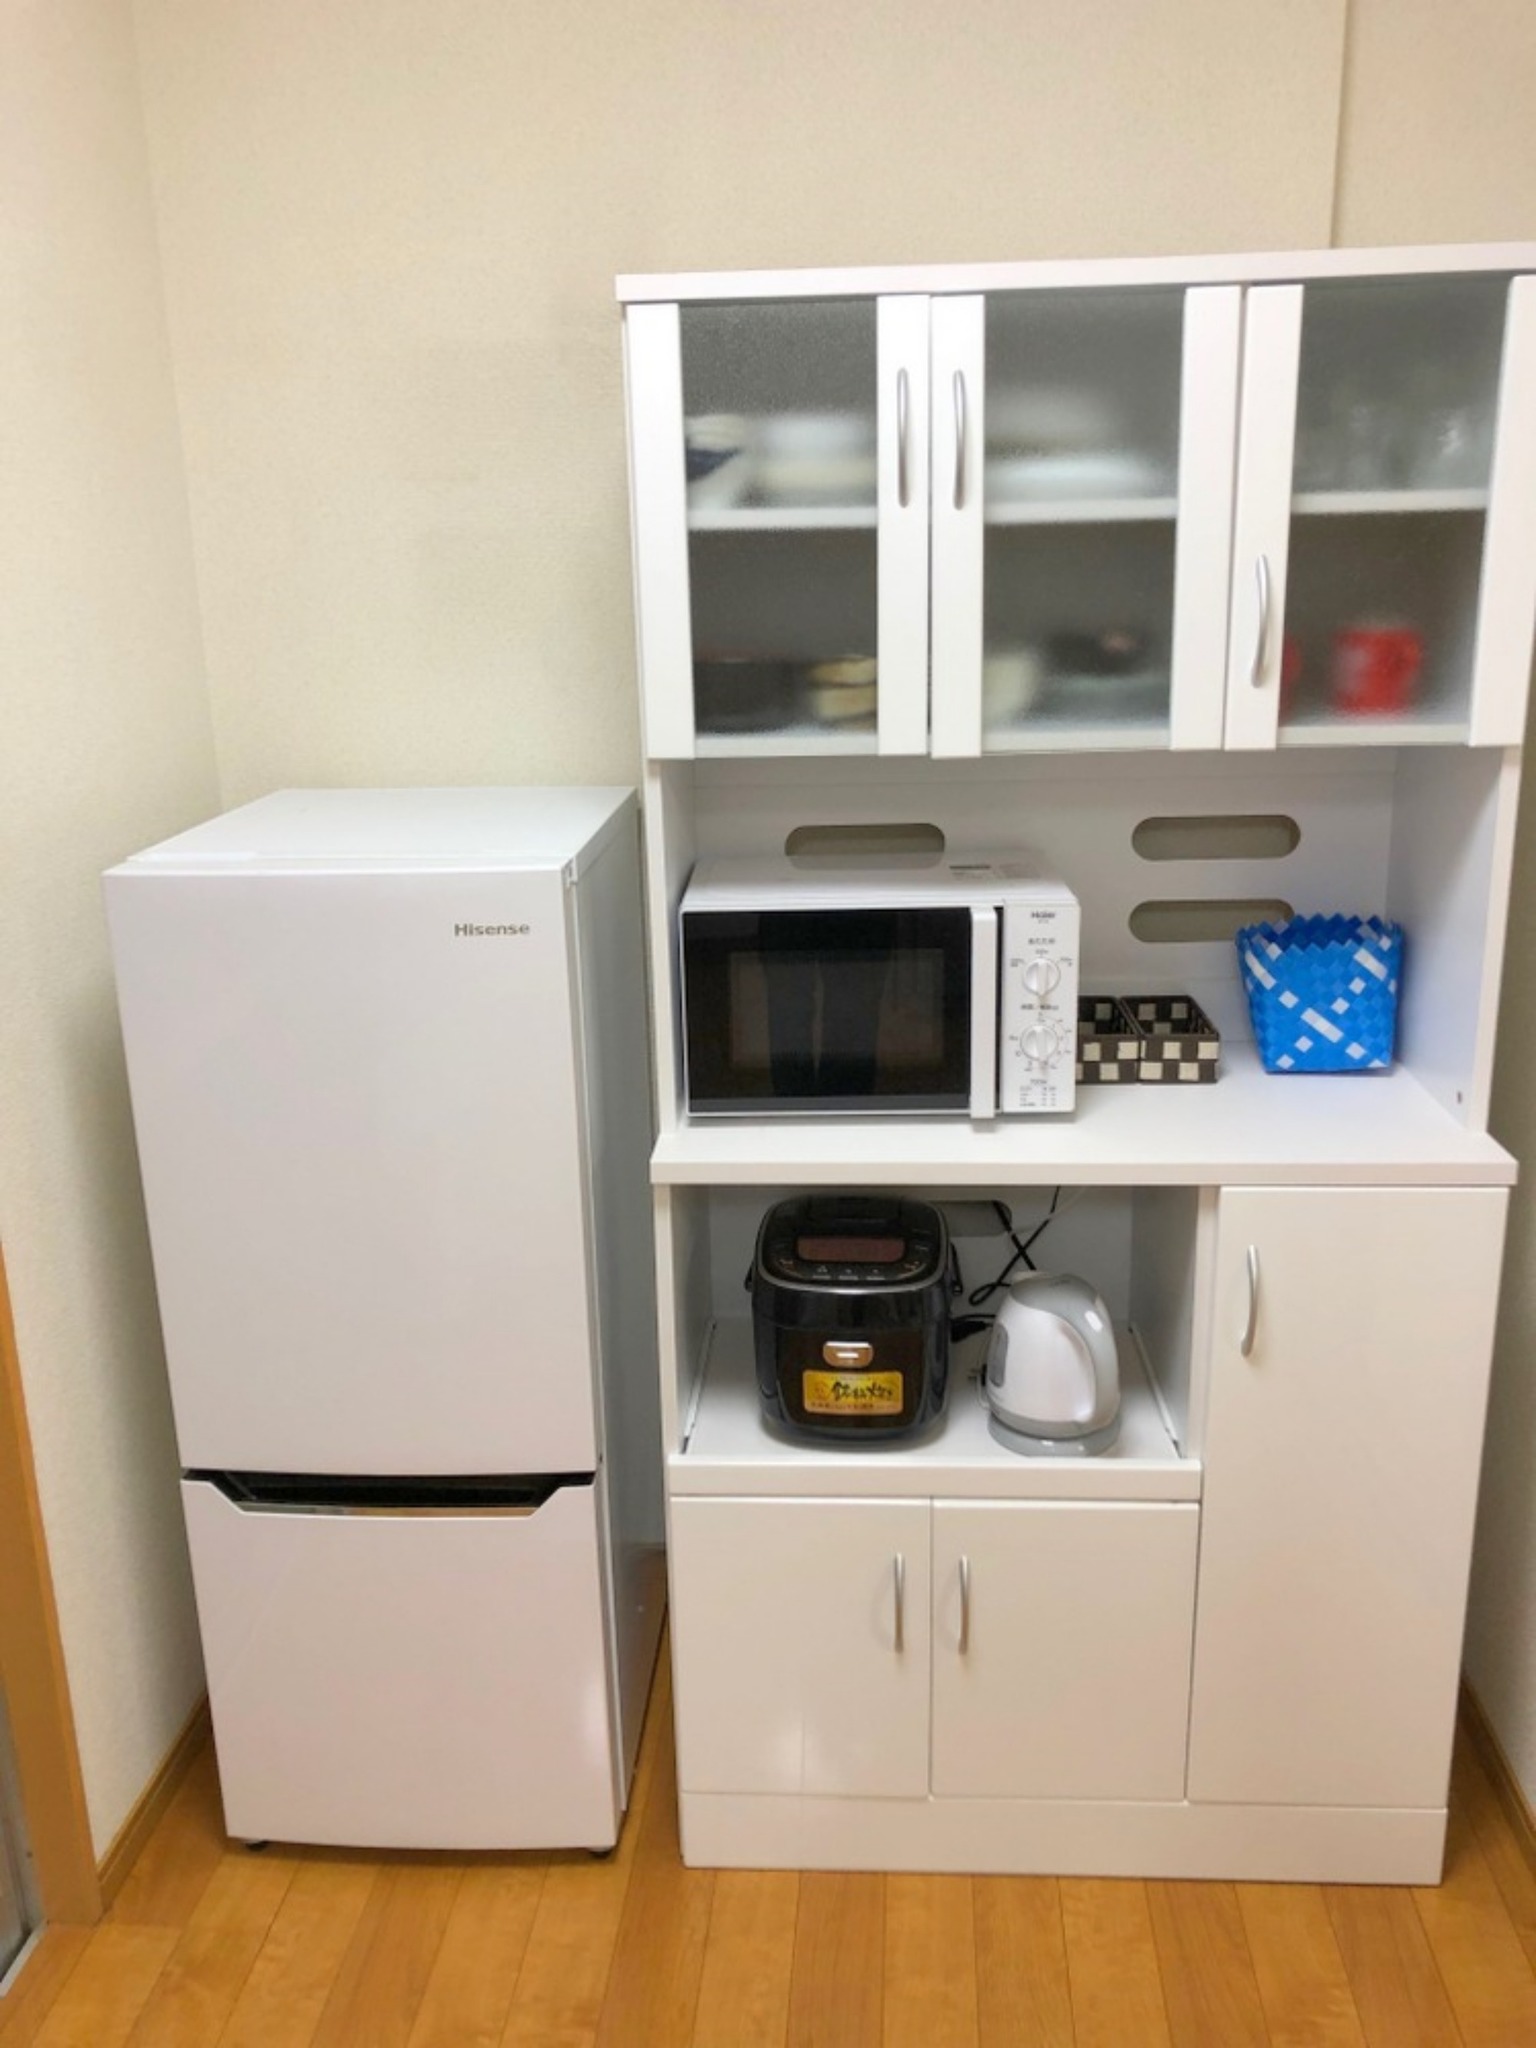 冷蔵冷蔵庫(容量130L) 電子レンジ 炊飯器5.5合炊き 食器棚 ケトル など